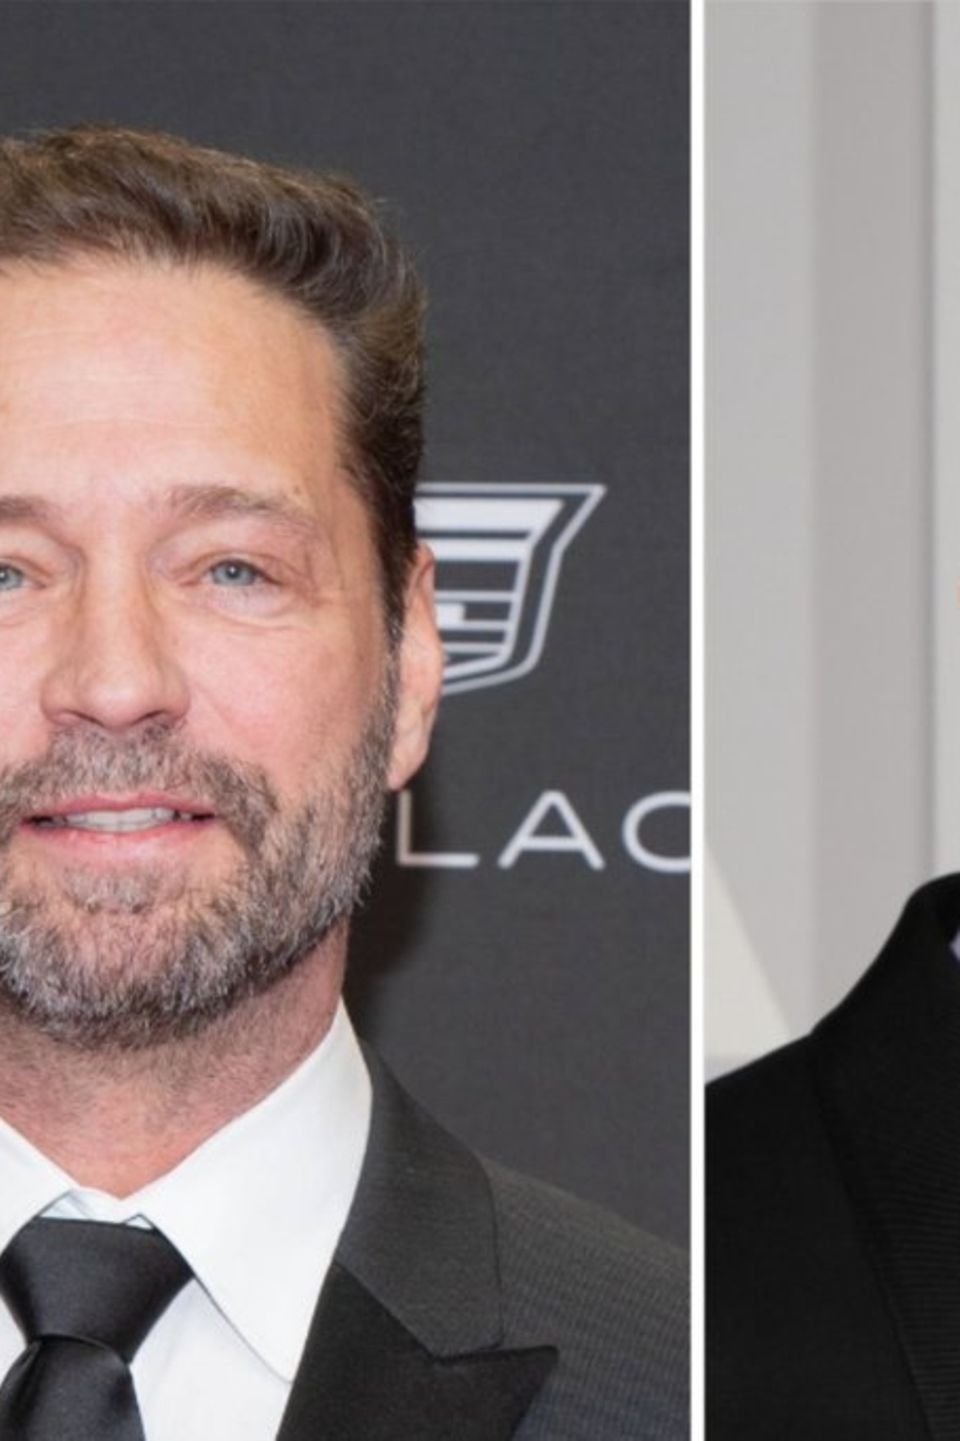 Jason Priestley (l.) und Brad Pitt teilten sich für kurze Zeit eine WG in einem "schäbigen Teil von Los Angeles".